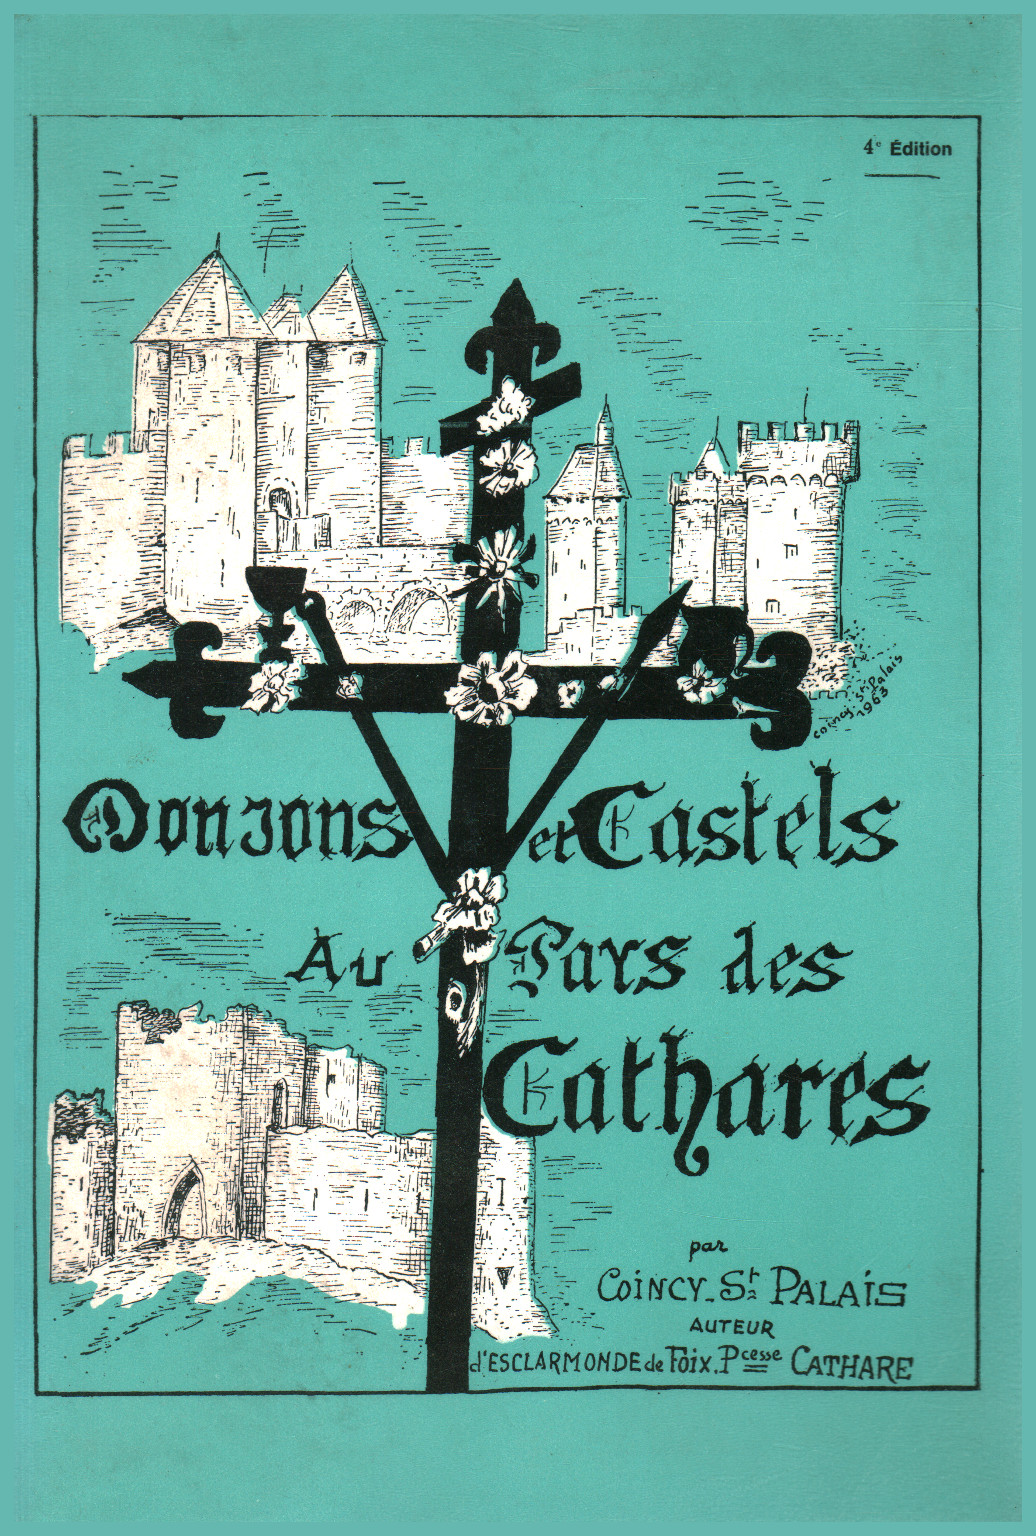 Donjons et castels au pays des cathares, s.a.